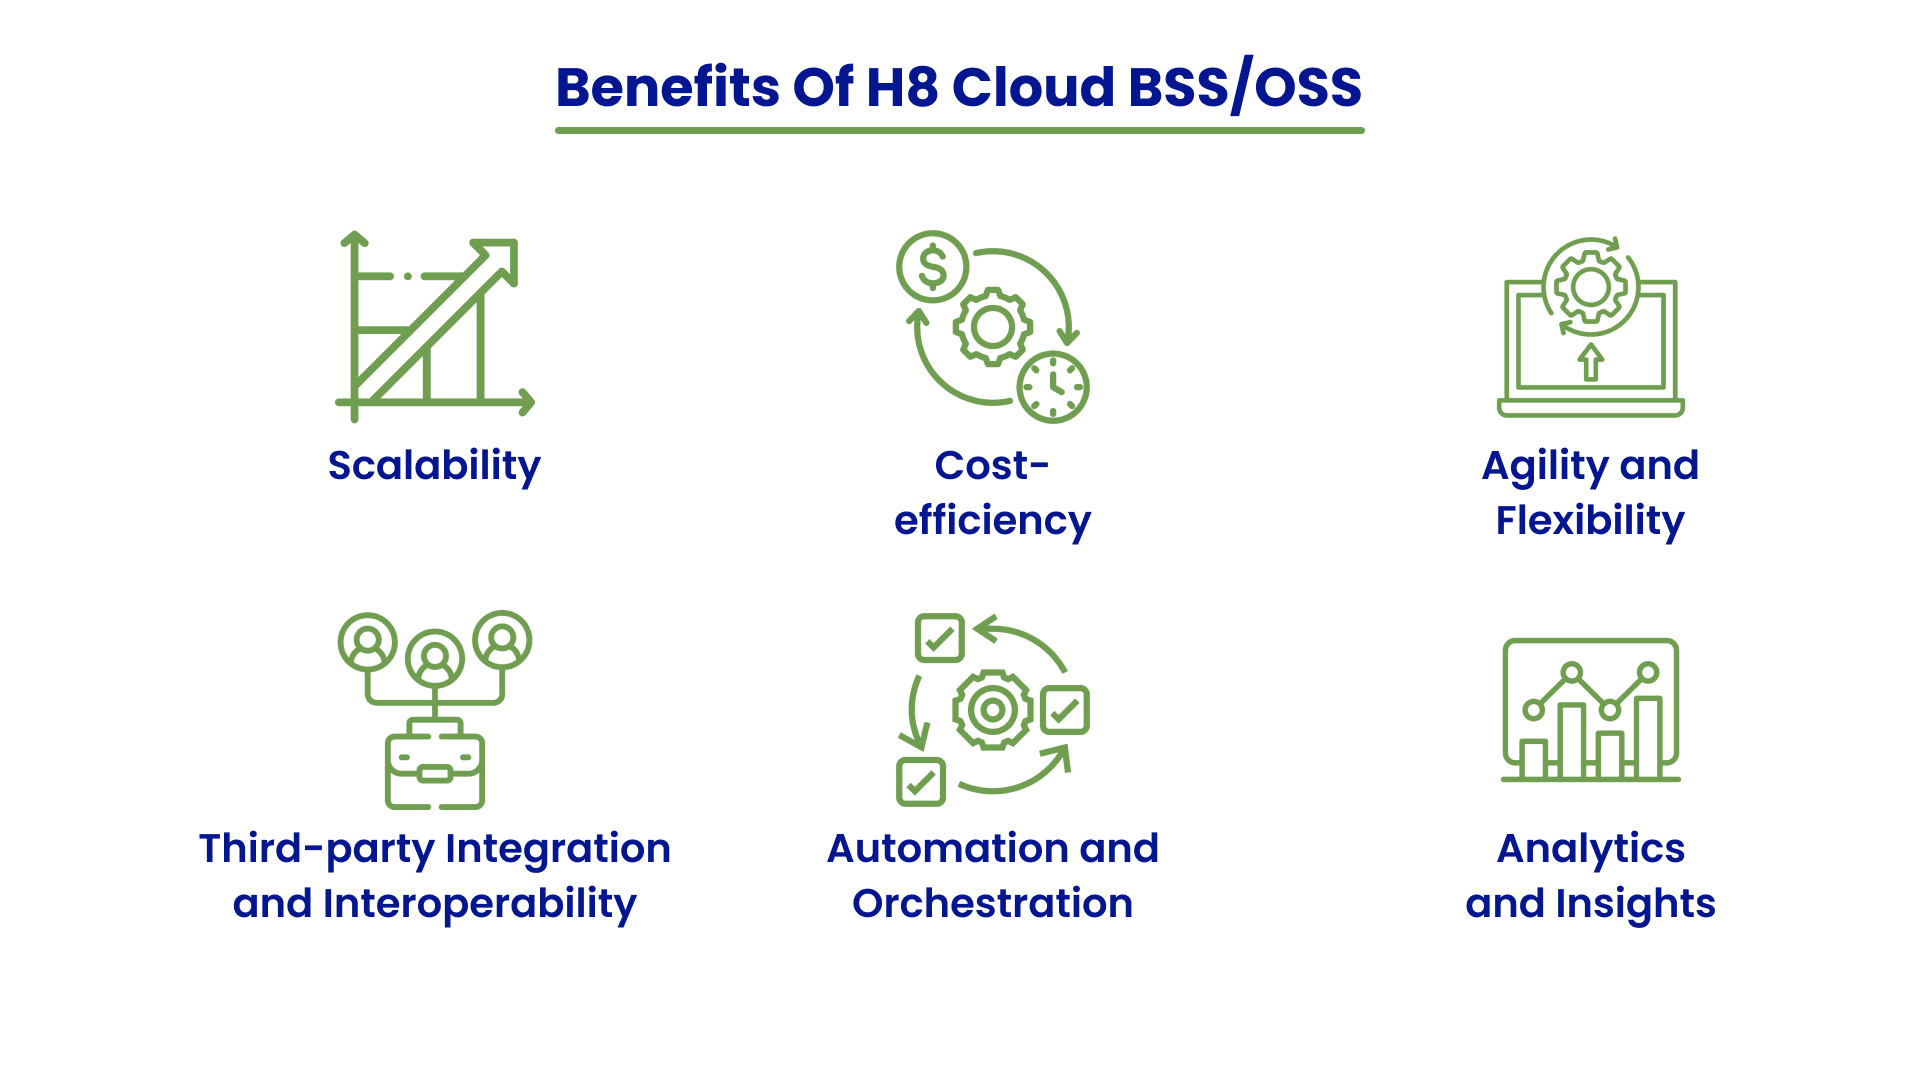 Cloud BSS/OSS